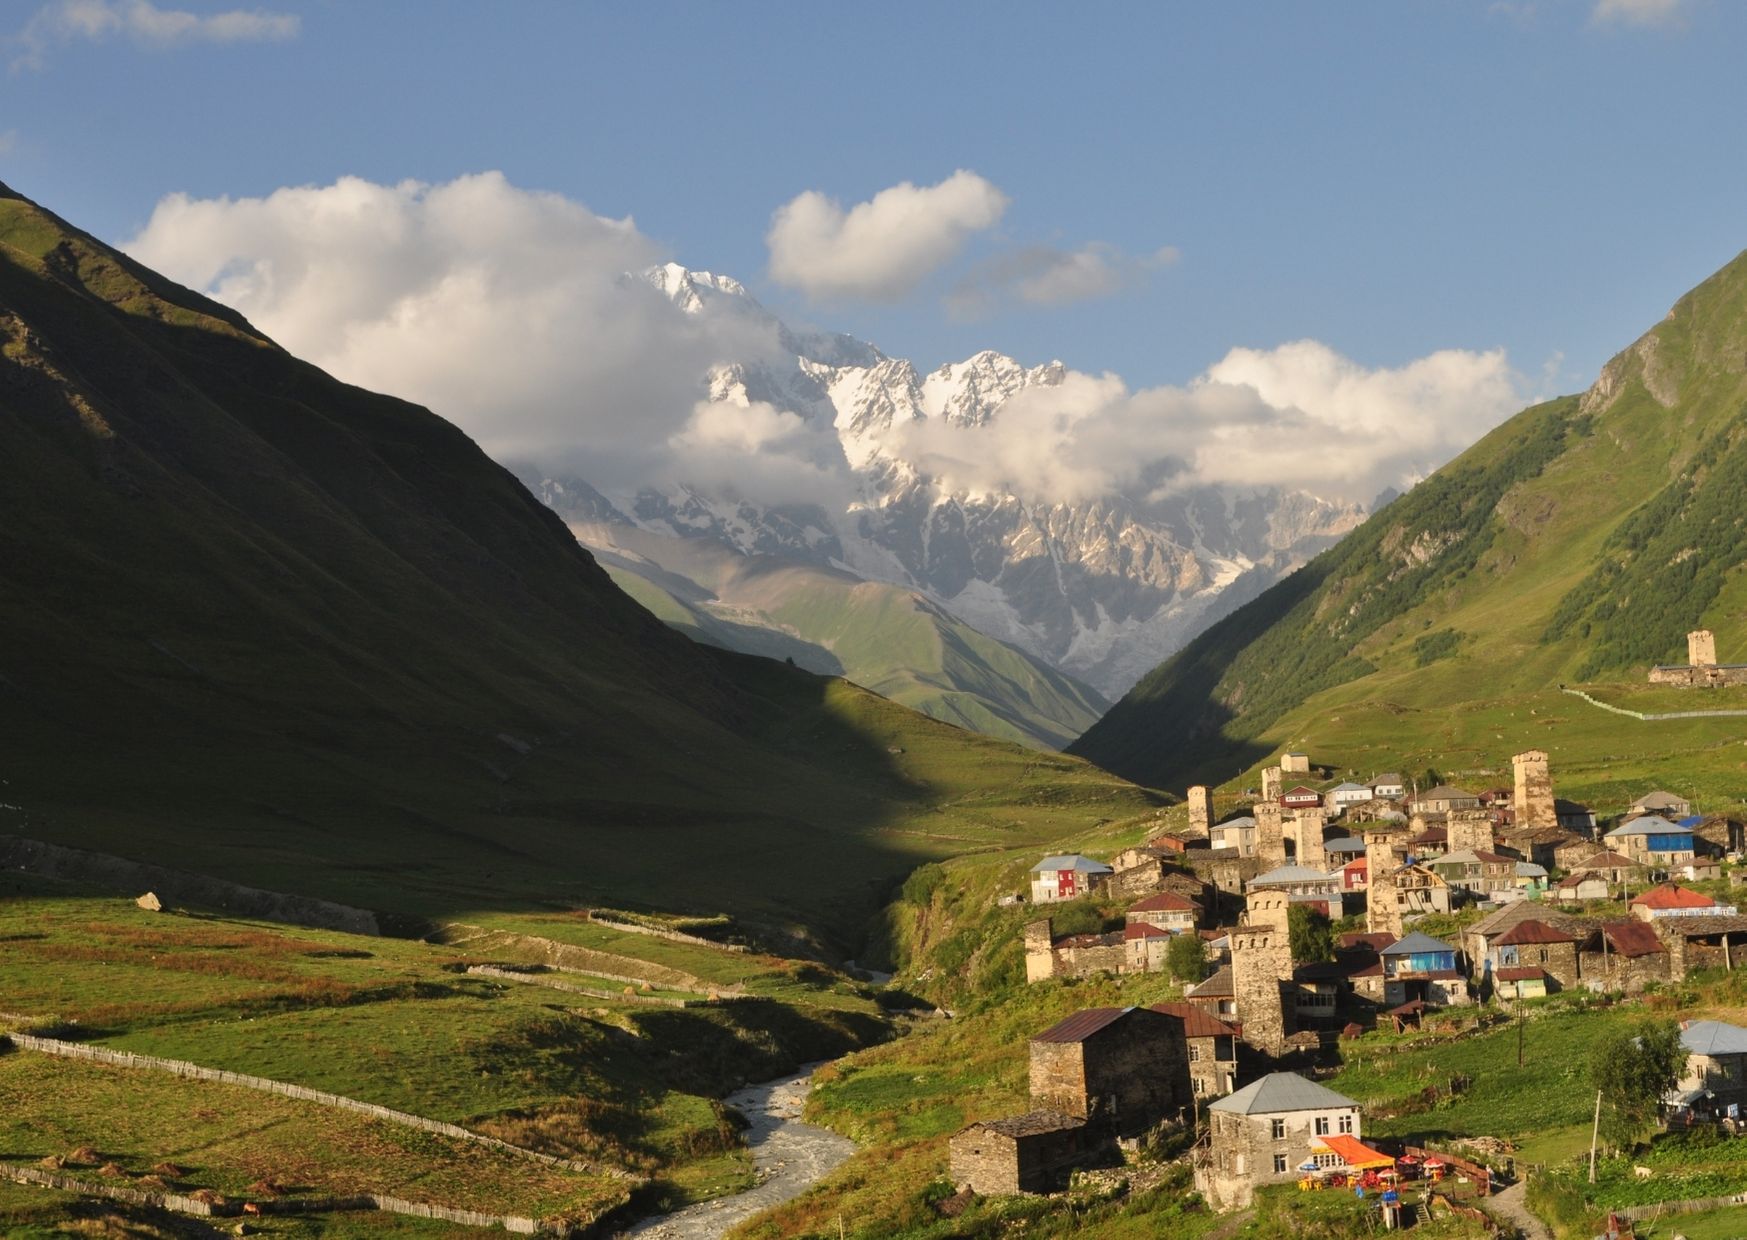 Trekking in Svaneti, Ushguli